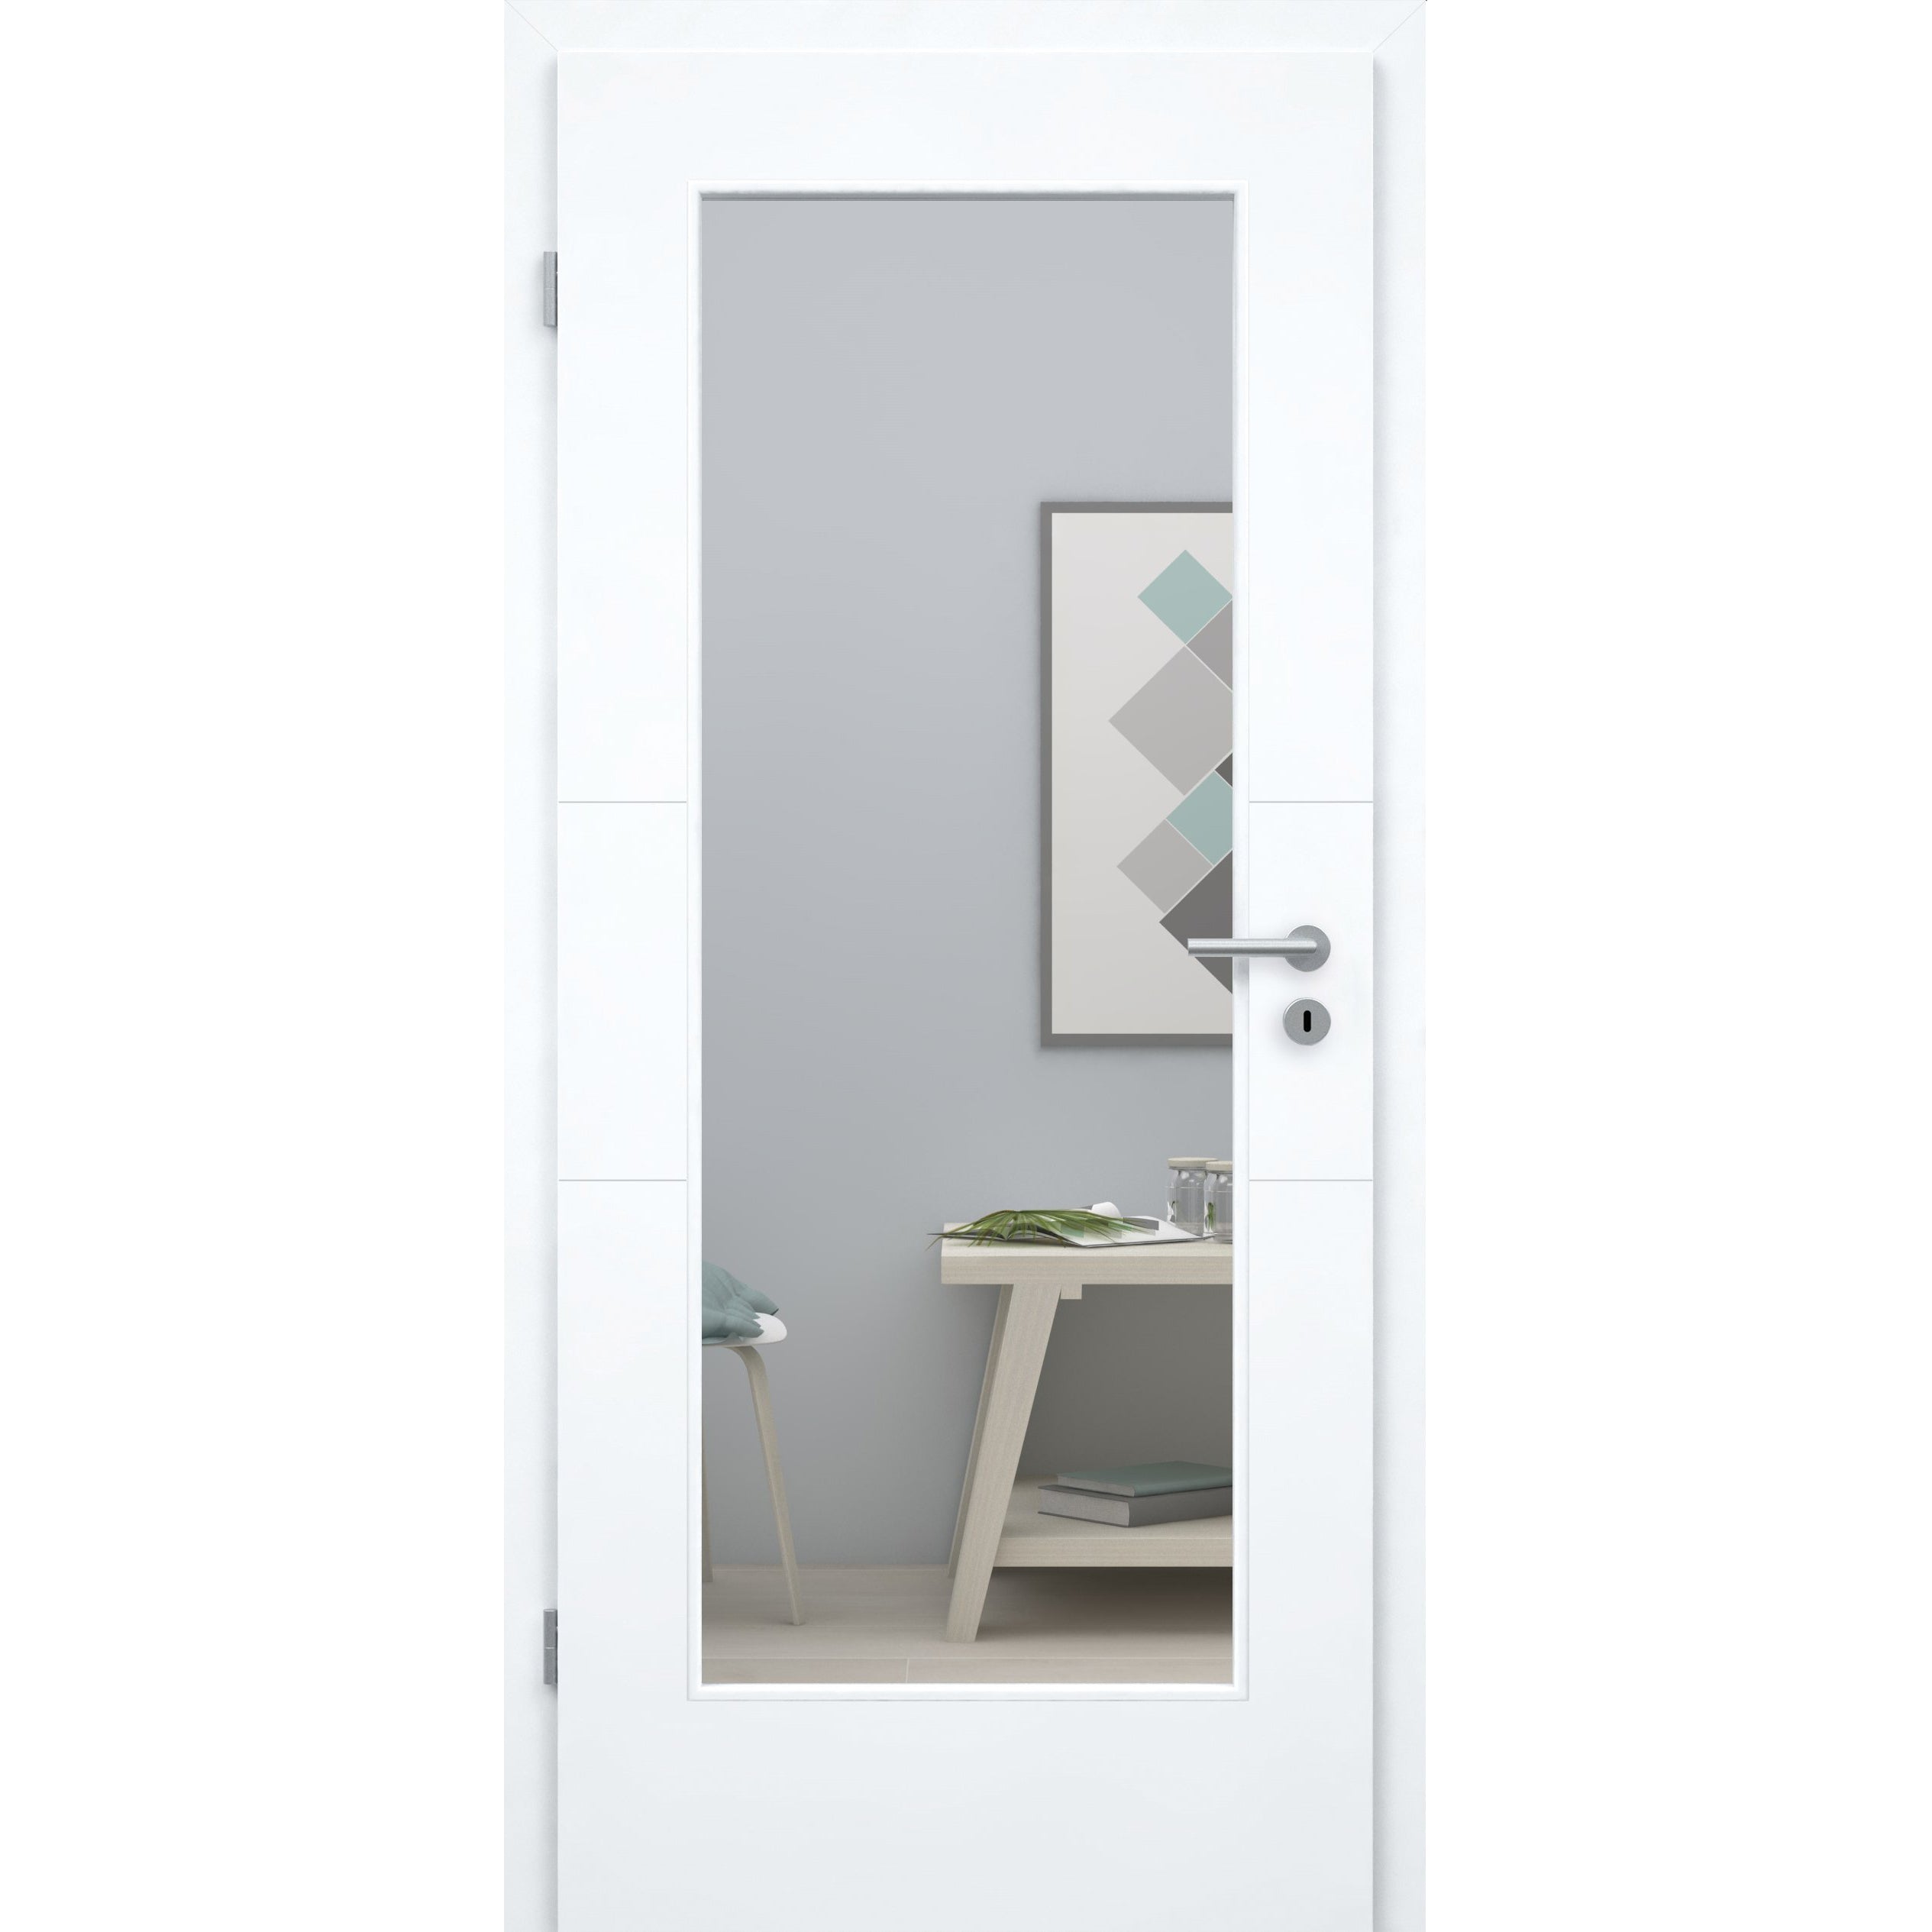 Zimmertür mit Zarge und Lichtausschnitt brillant-weiß 2 Rillen quer Designkante - Modell Designtür Q23LA